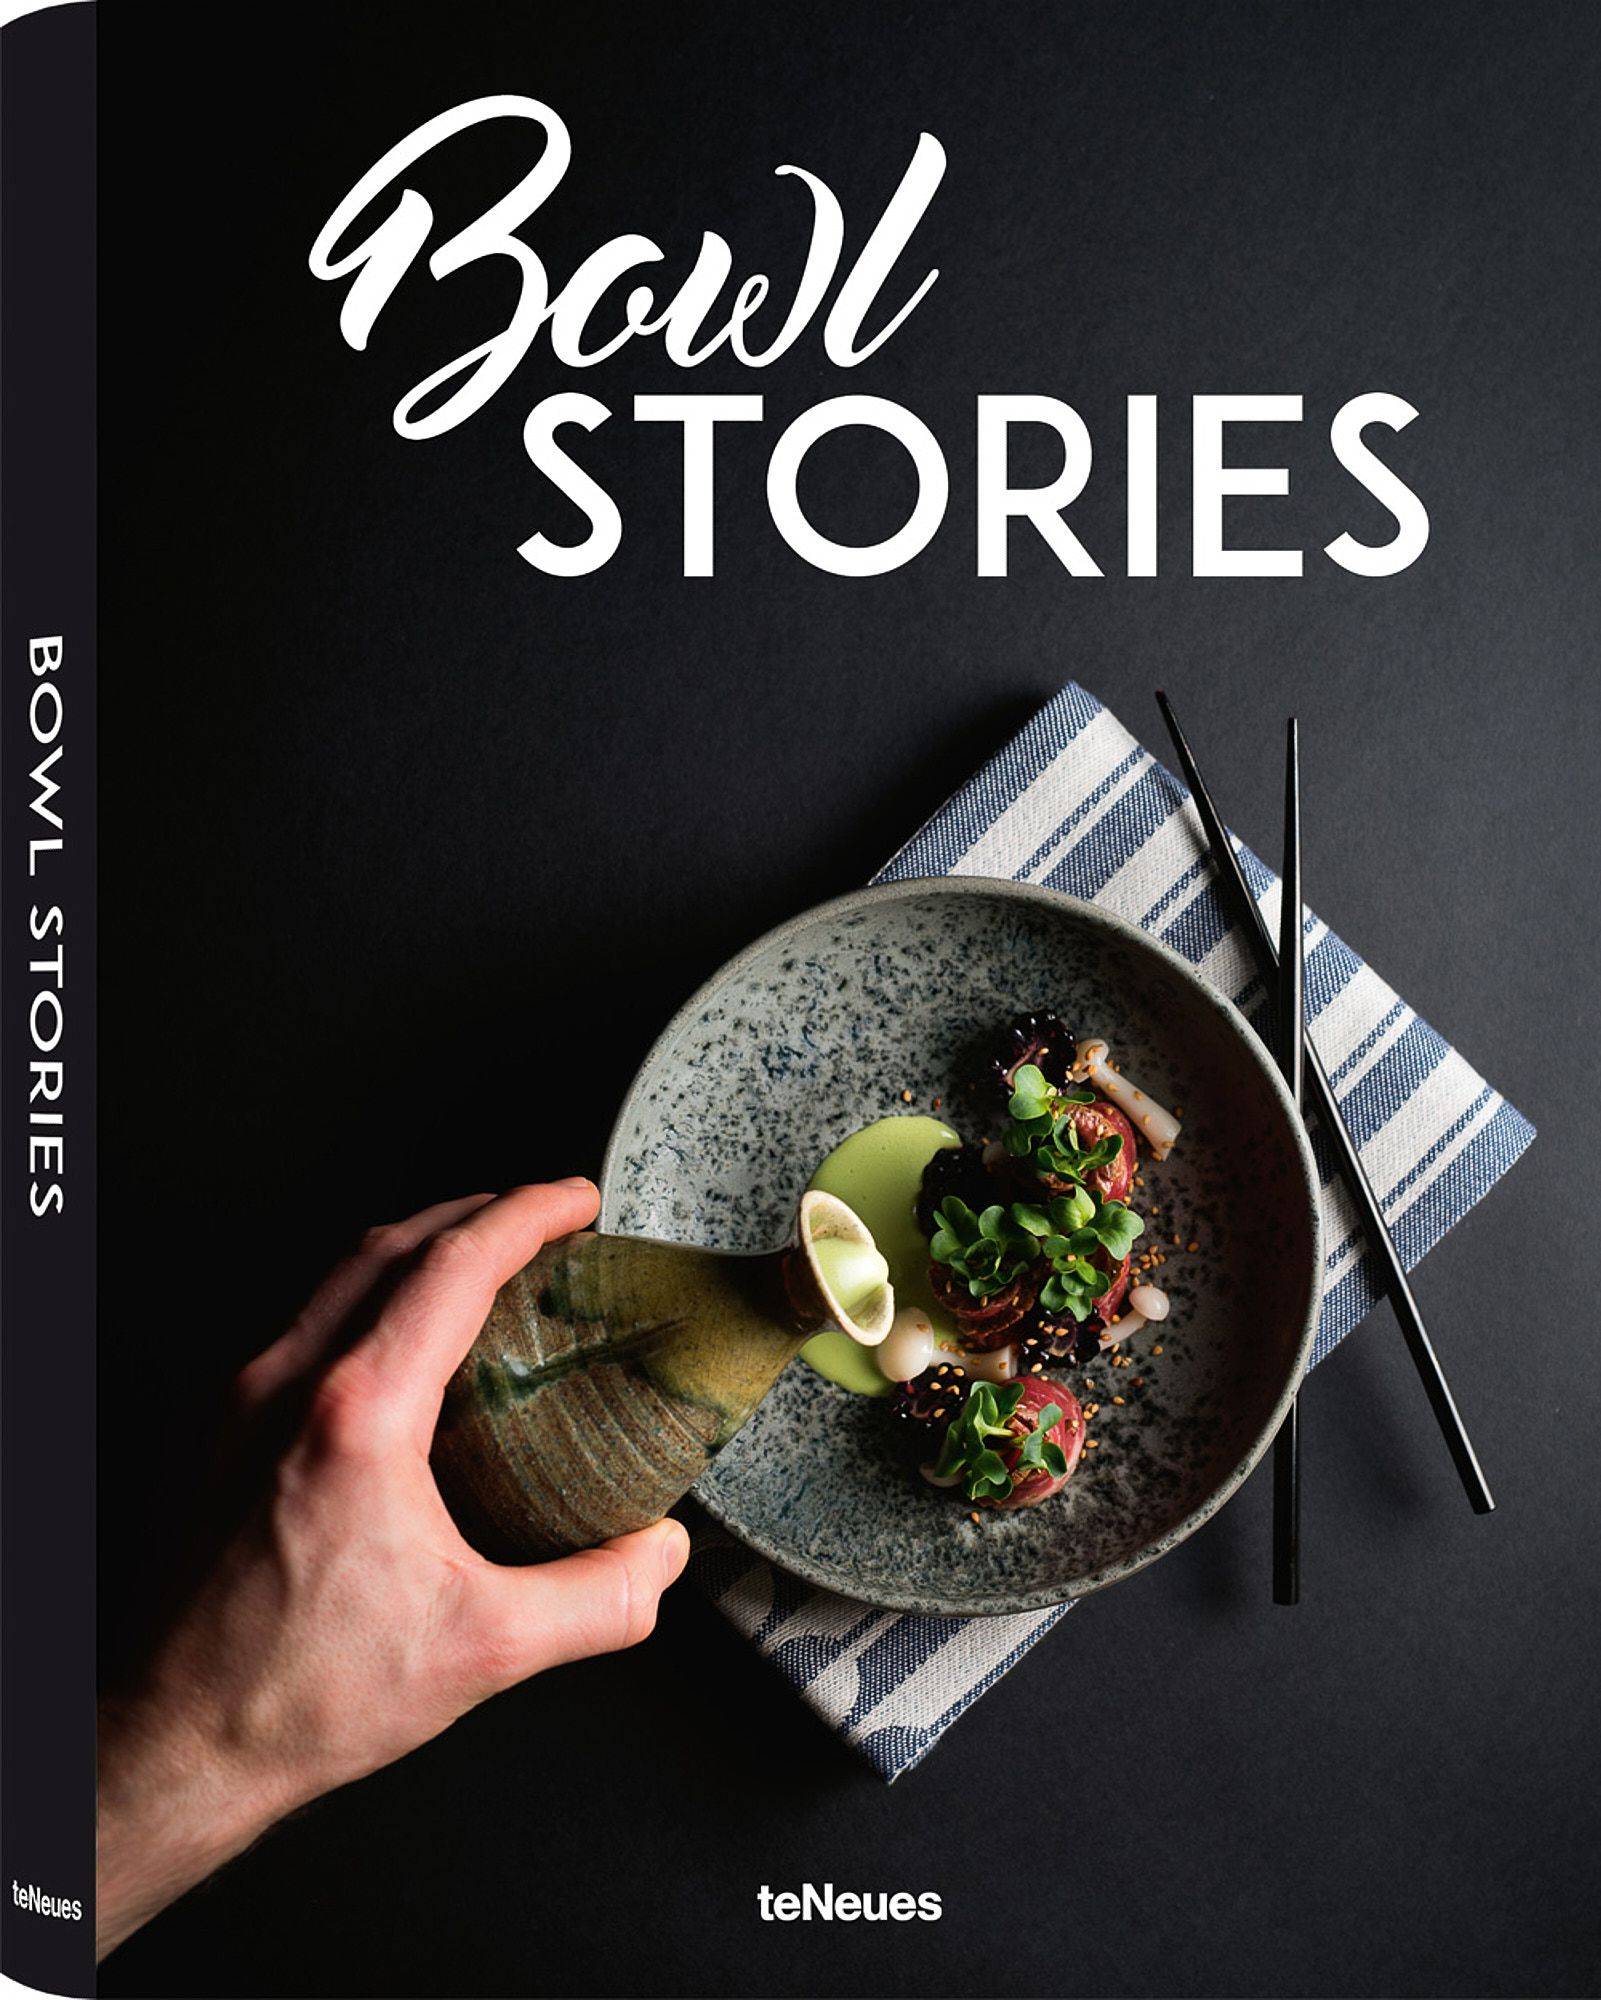 das bowl stories kochbuch von ben donath cover